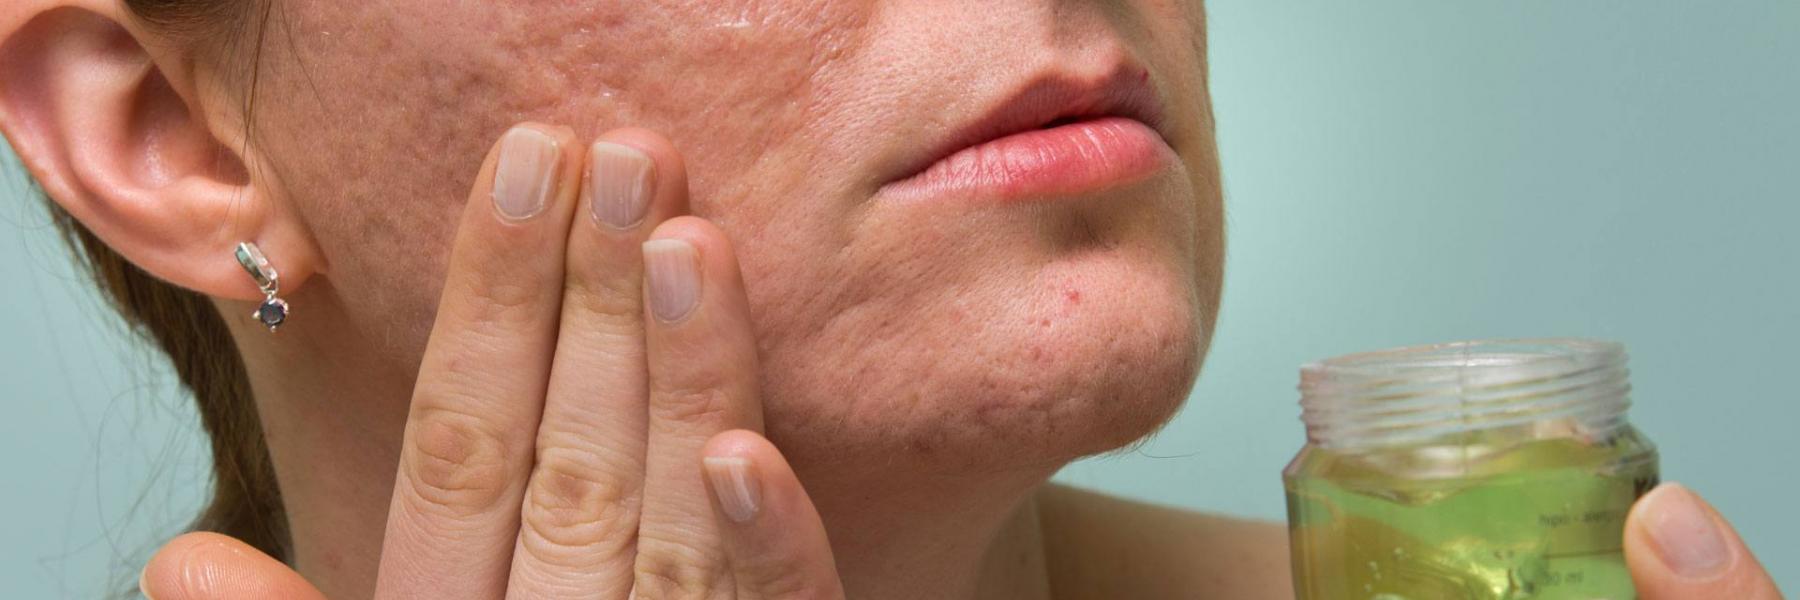 علاجات طبيعية لإزالة ندوب وجروح الوجه